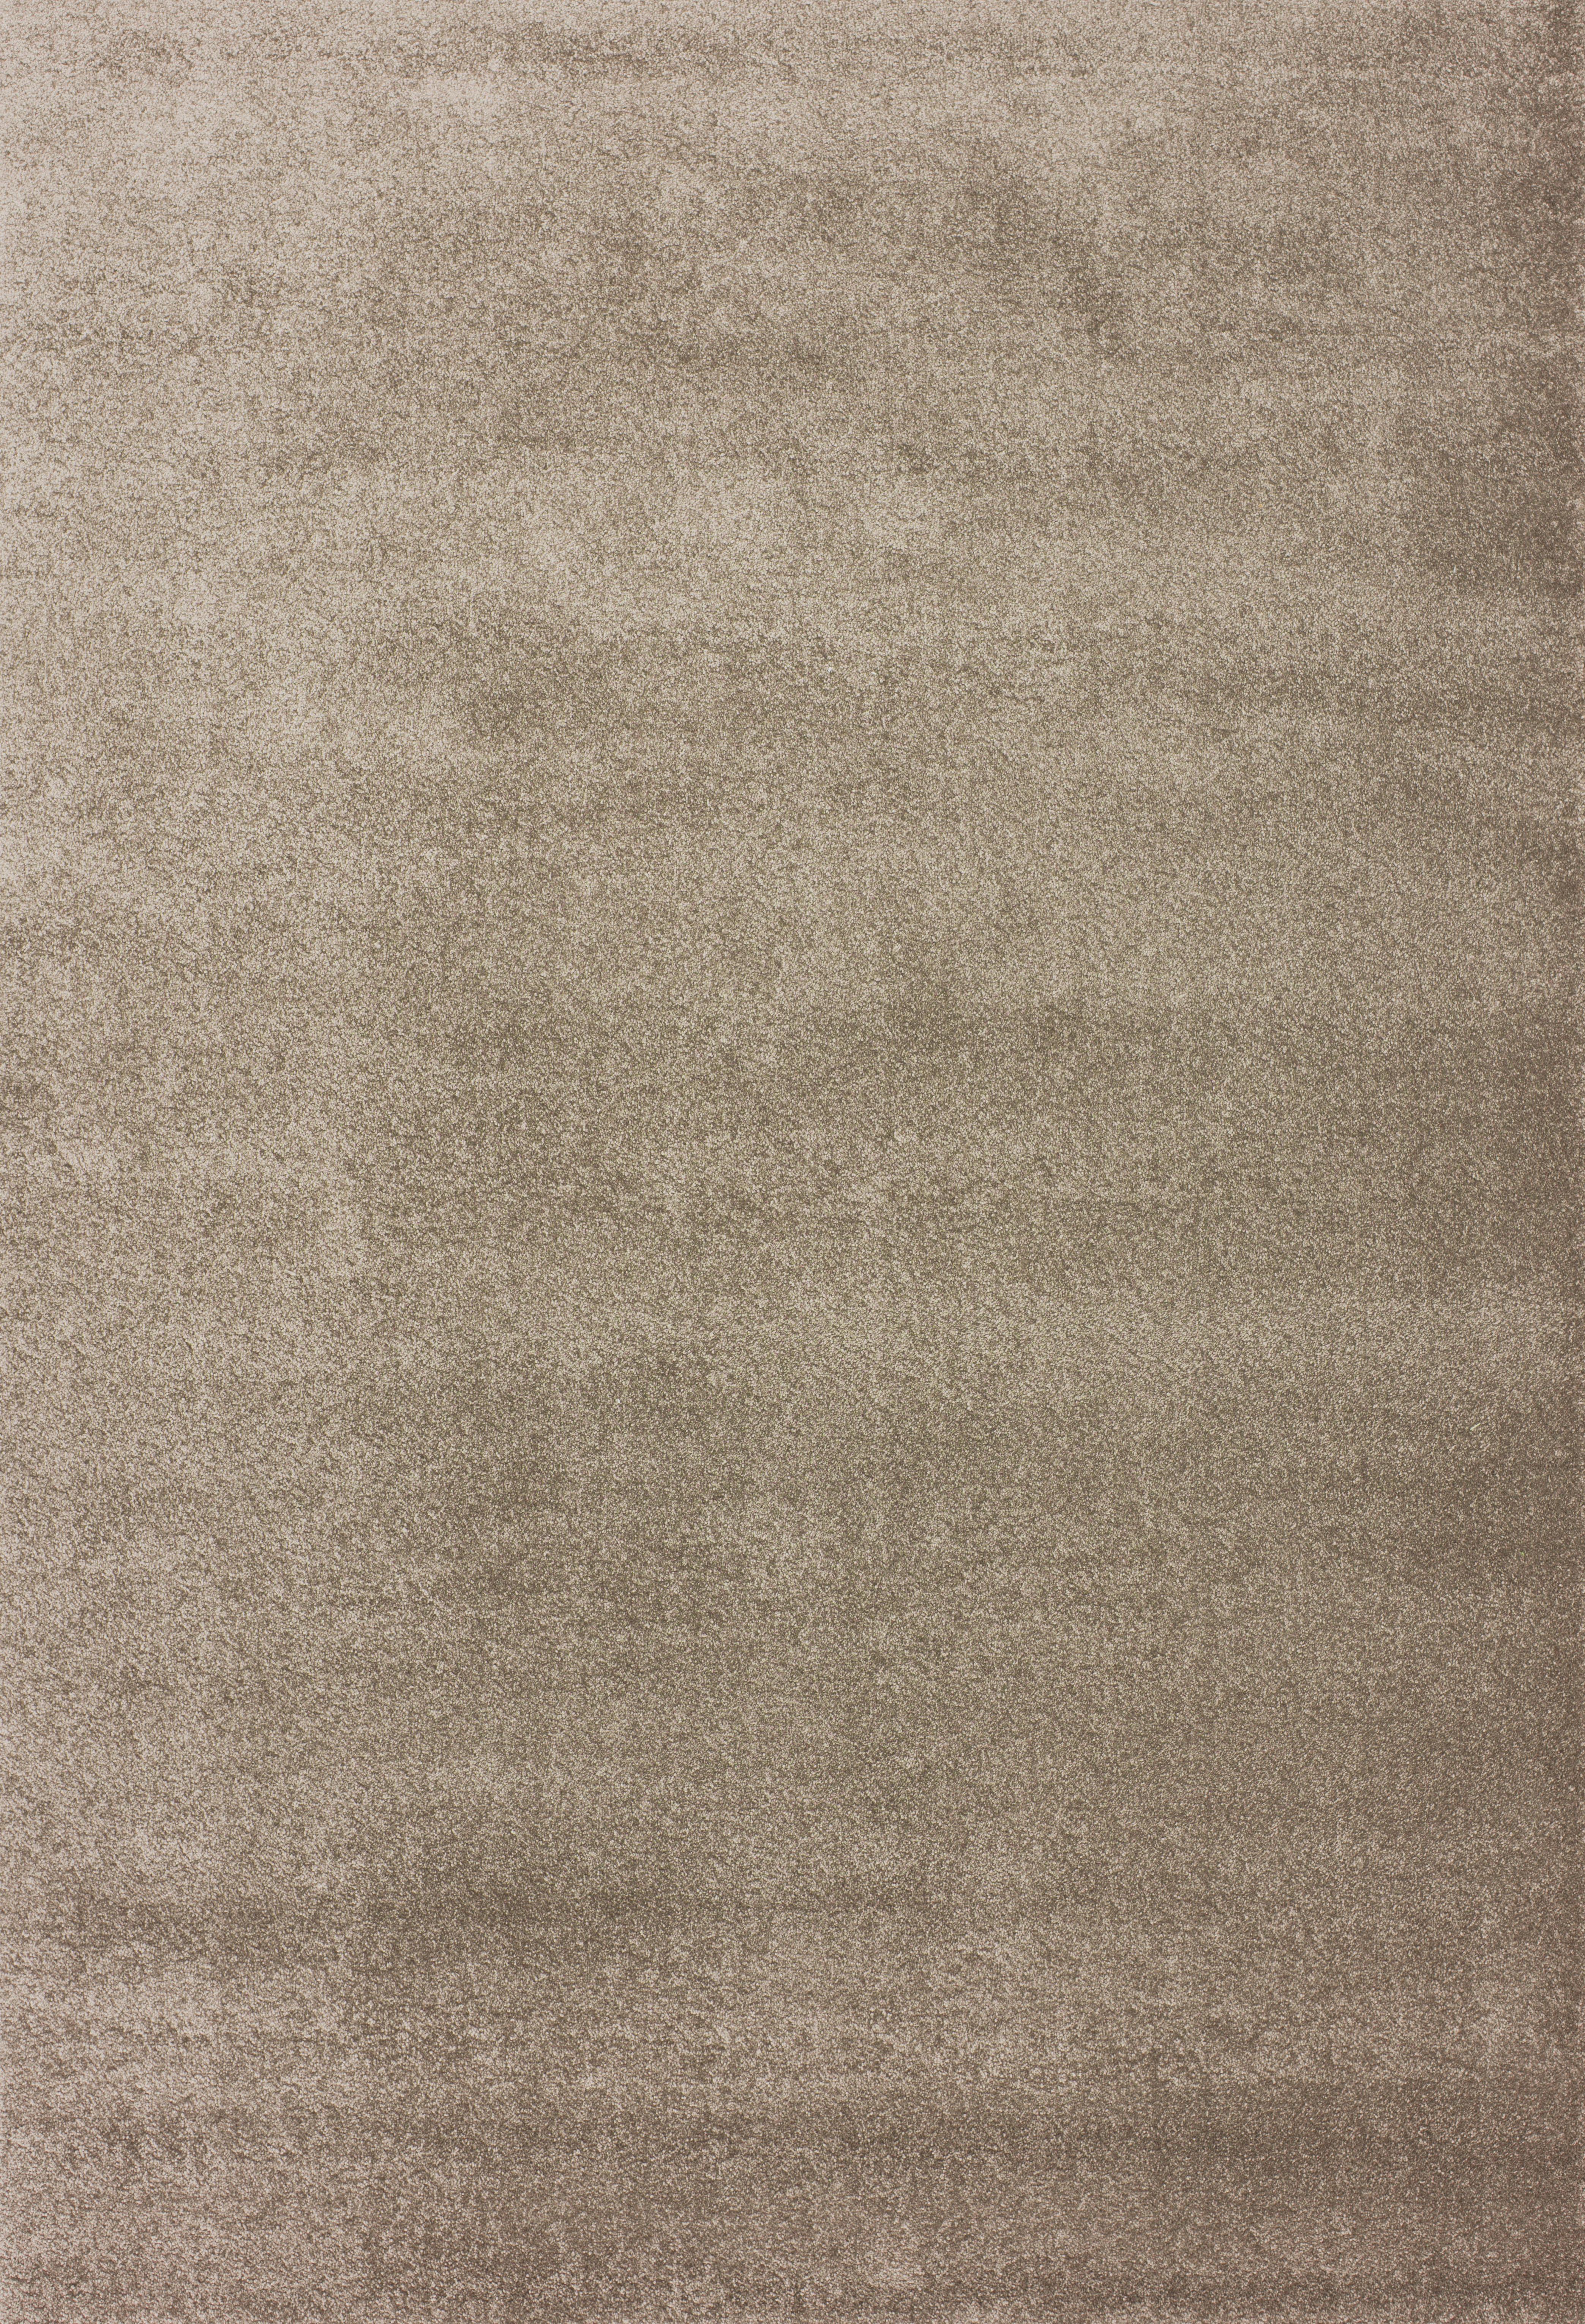 Hochflorteppich Roma in Beige ca. 60x90cm - Beige, MODERN, Textil (60/90cm) - MID.YOU